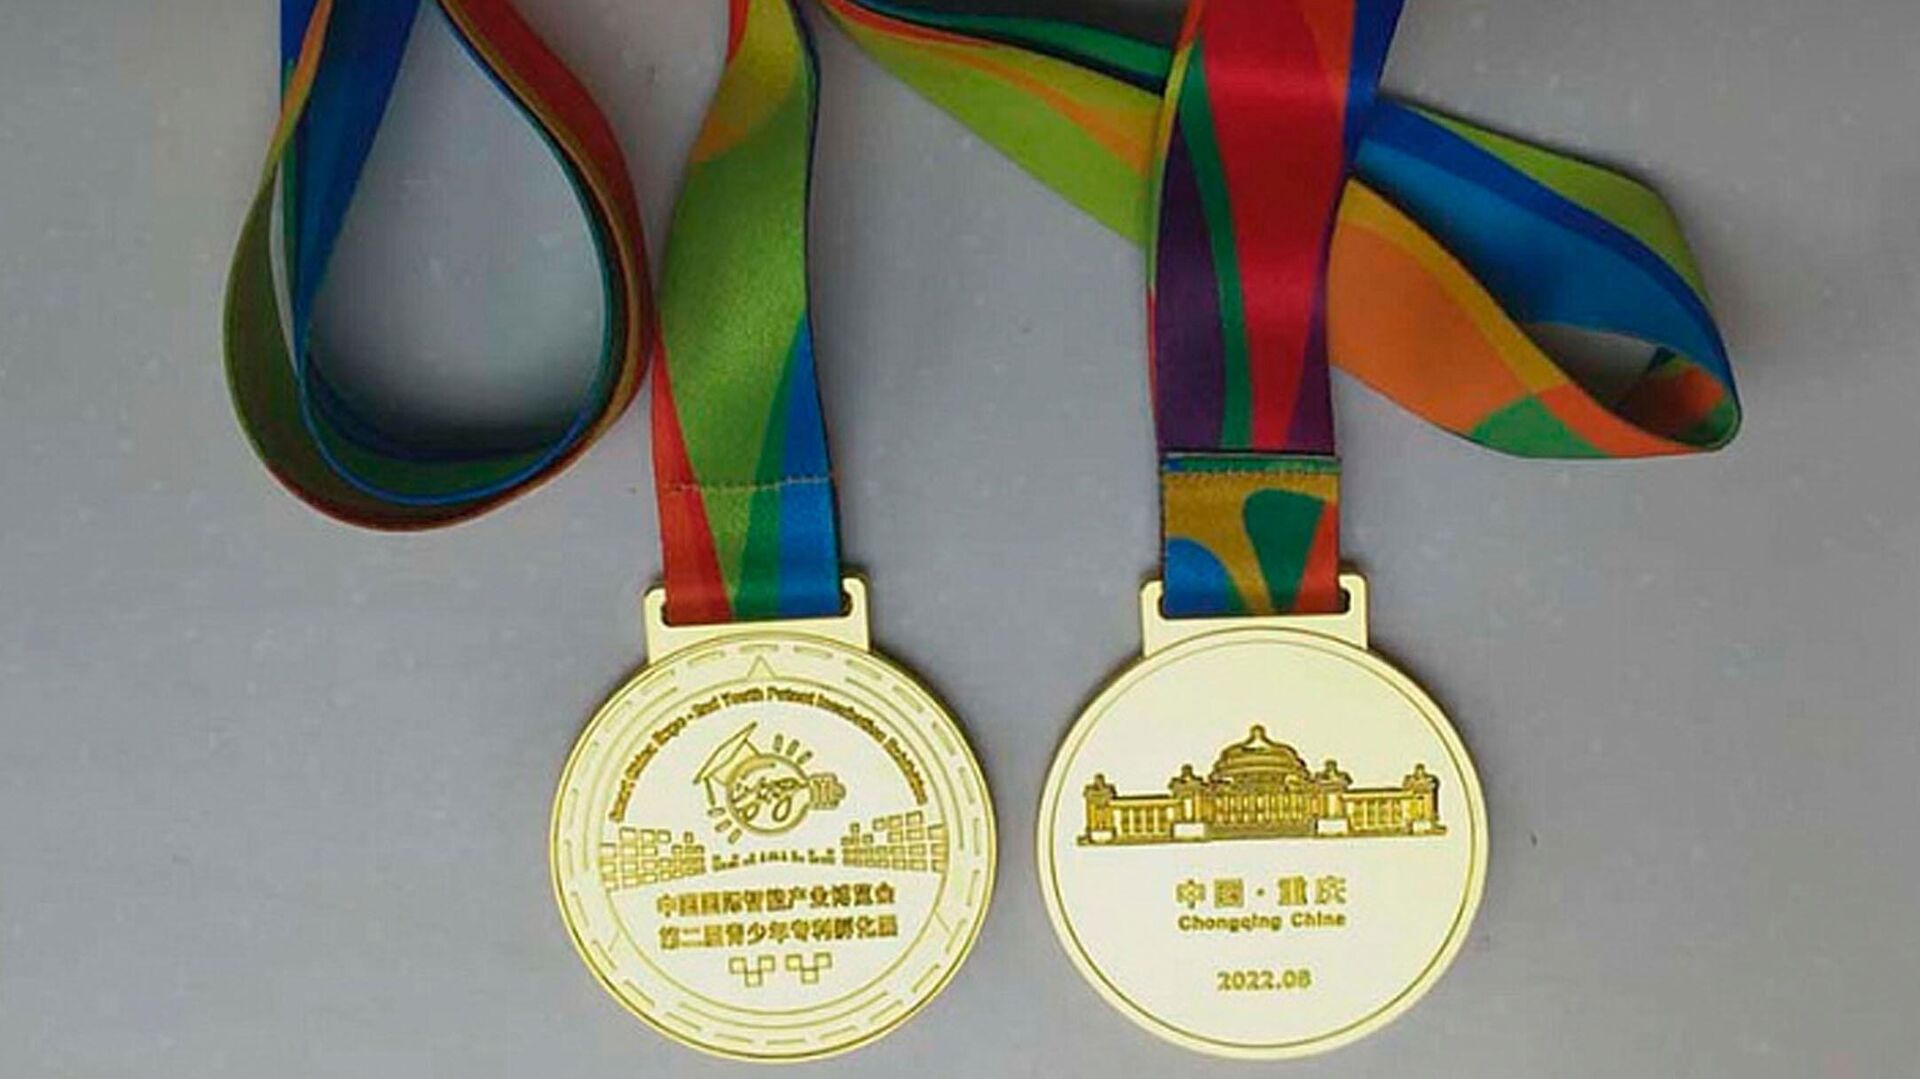 Команда белгородца Владислава Дубровы получила золотую медаль на Международной выставке Smart China Expo - РИА Новости, 1920, 15.09.2022